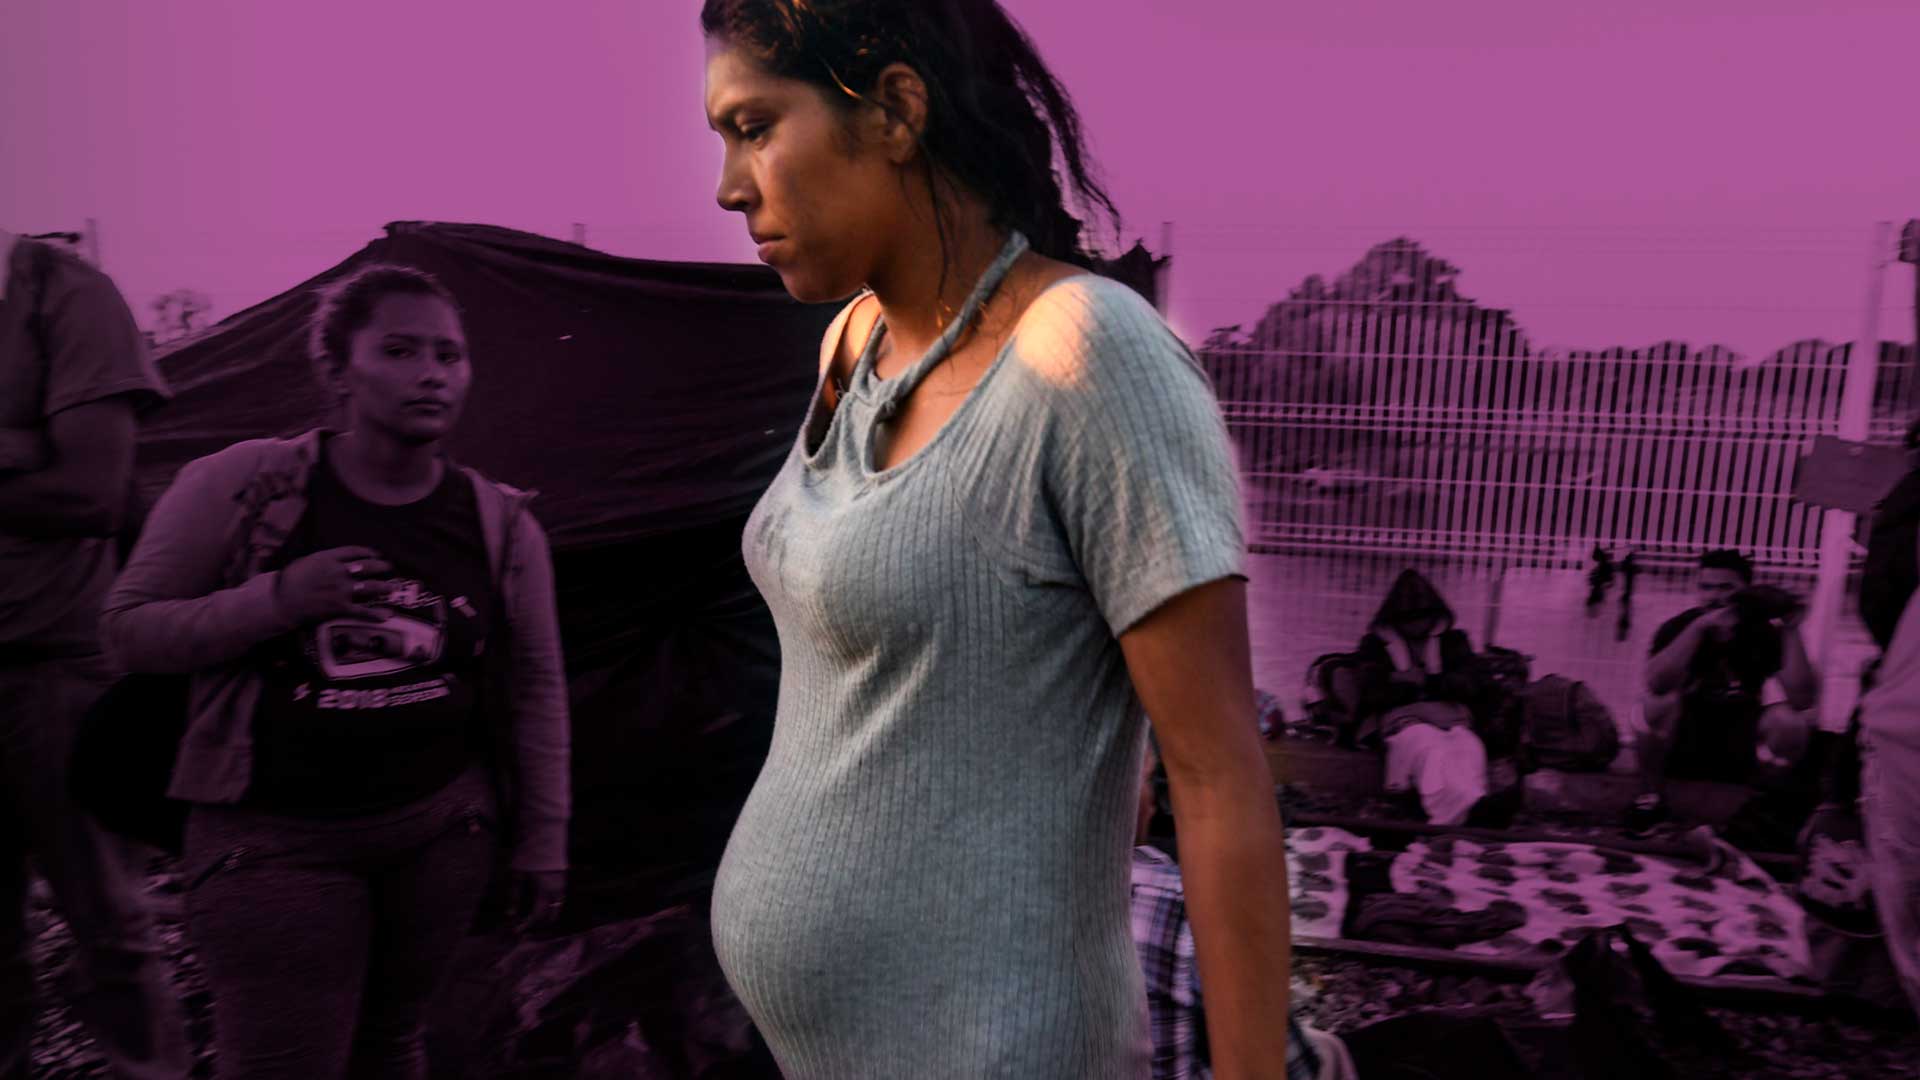 Mujeres migrantes que les retiraron el útero sufren de estrés postraumático